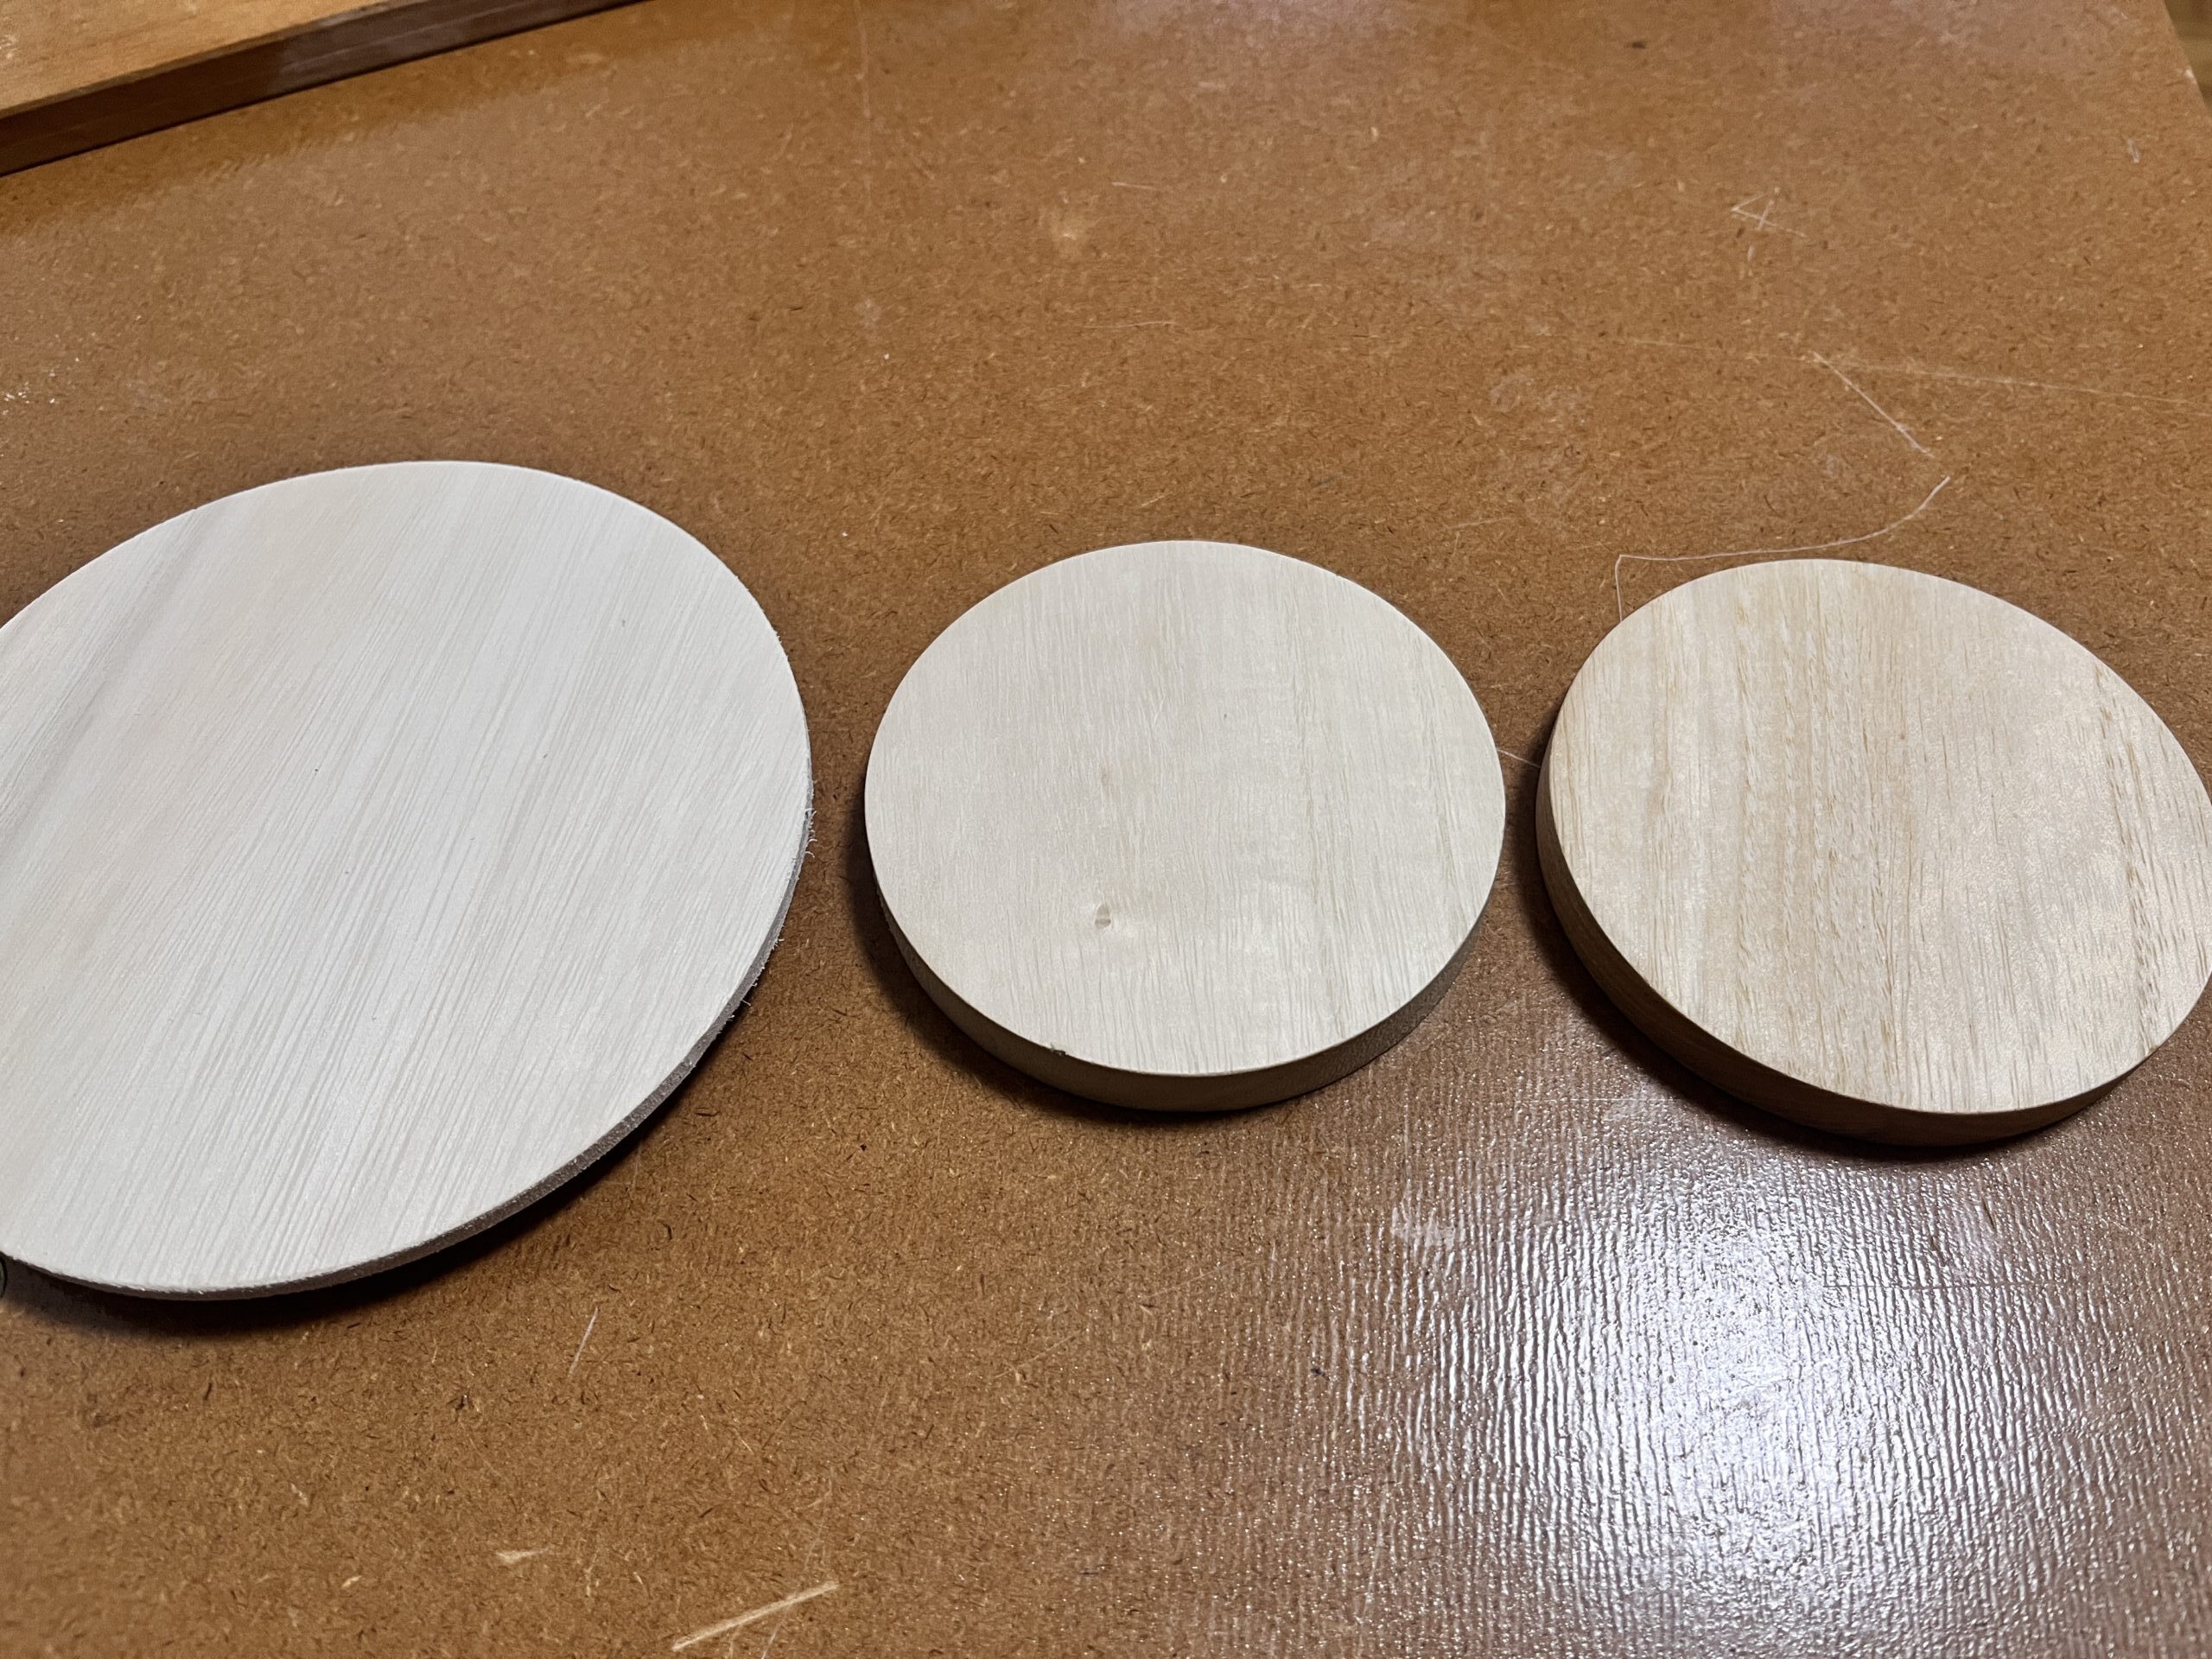 トリマーで円形に木材をカットした。様々な大きさにカットできる。